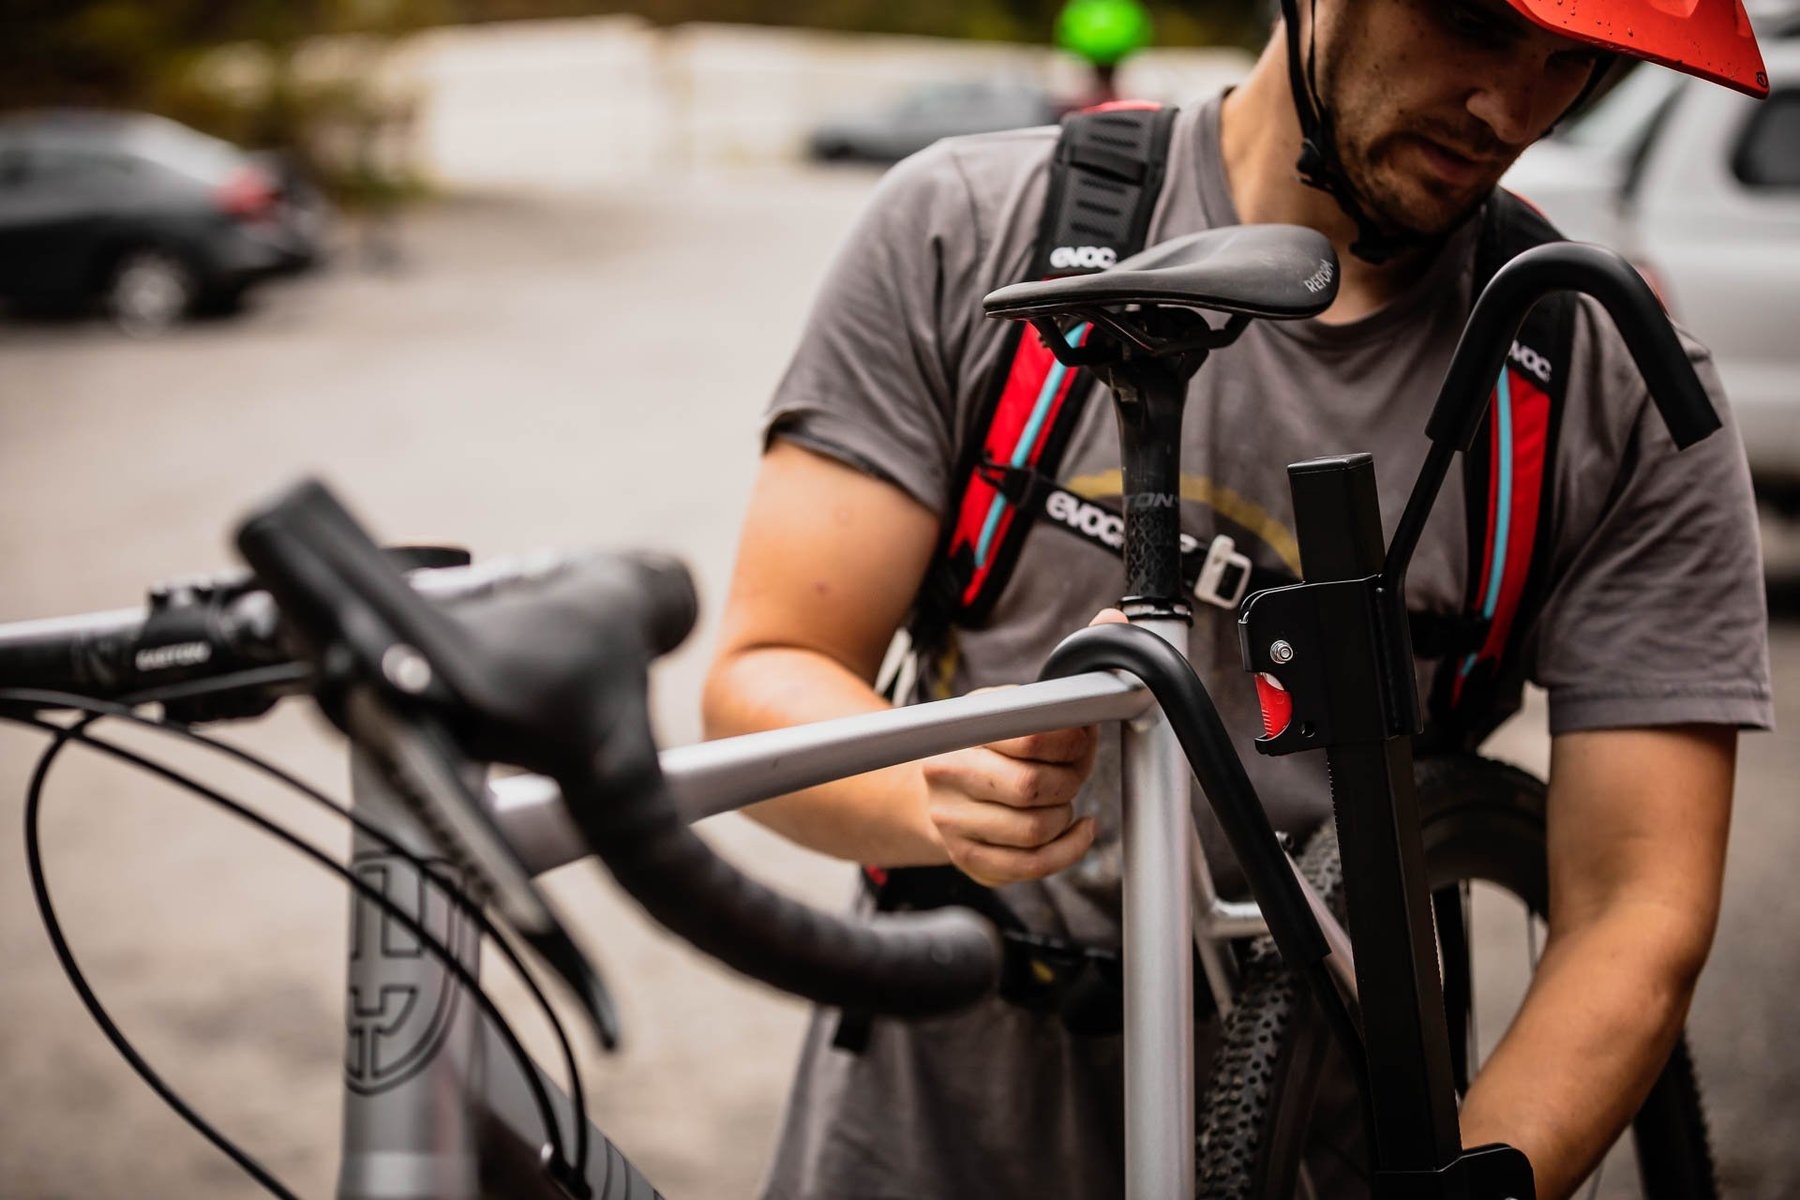 Swagman Housse a vélo Swagman pour VR pour 2 vélos E-BIKE